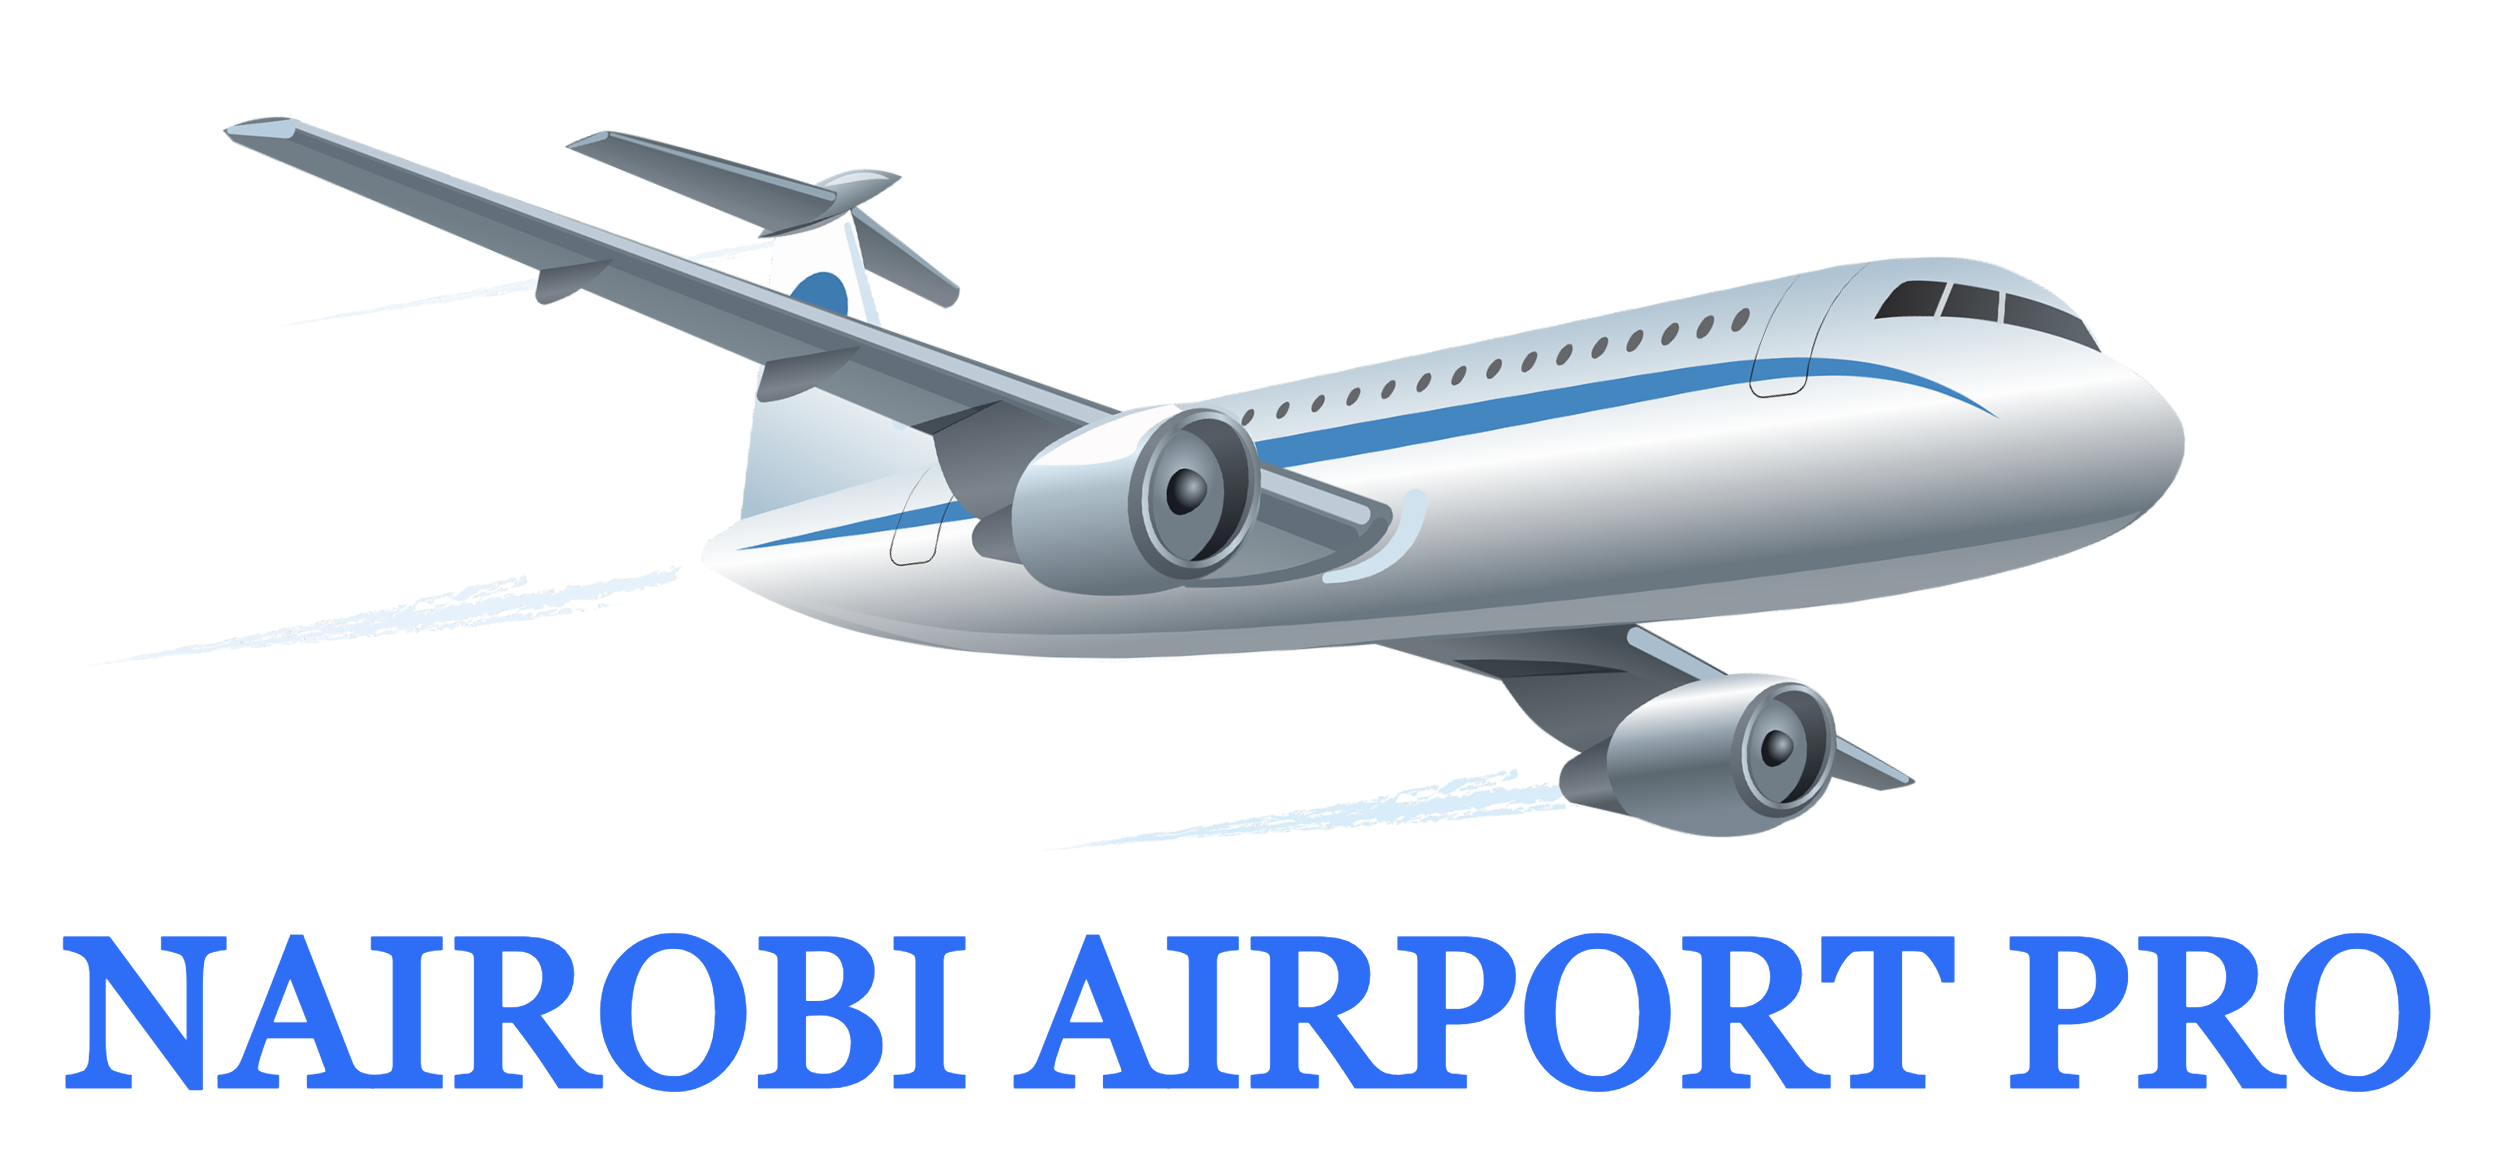 Nairobi Airport Pro | My account - Nairobi Airport Pro